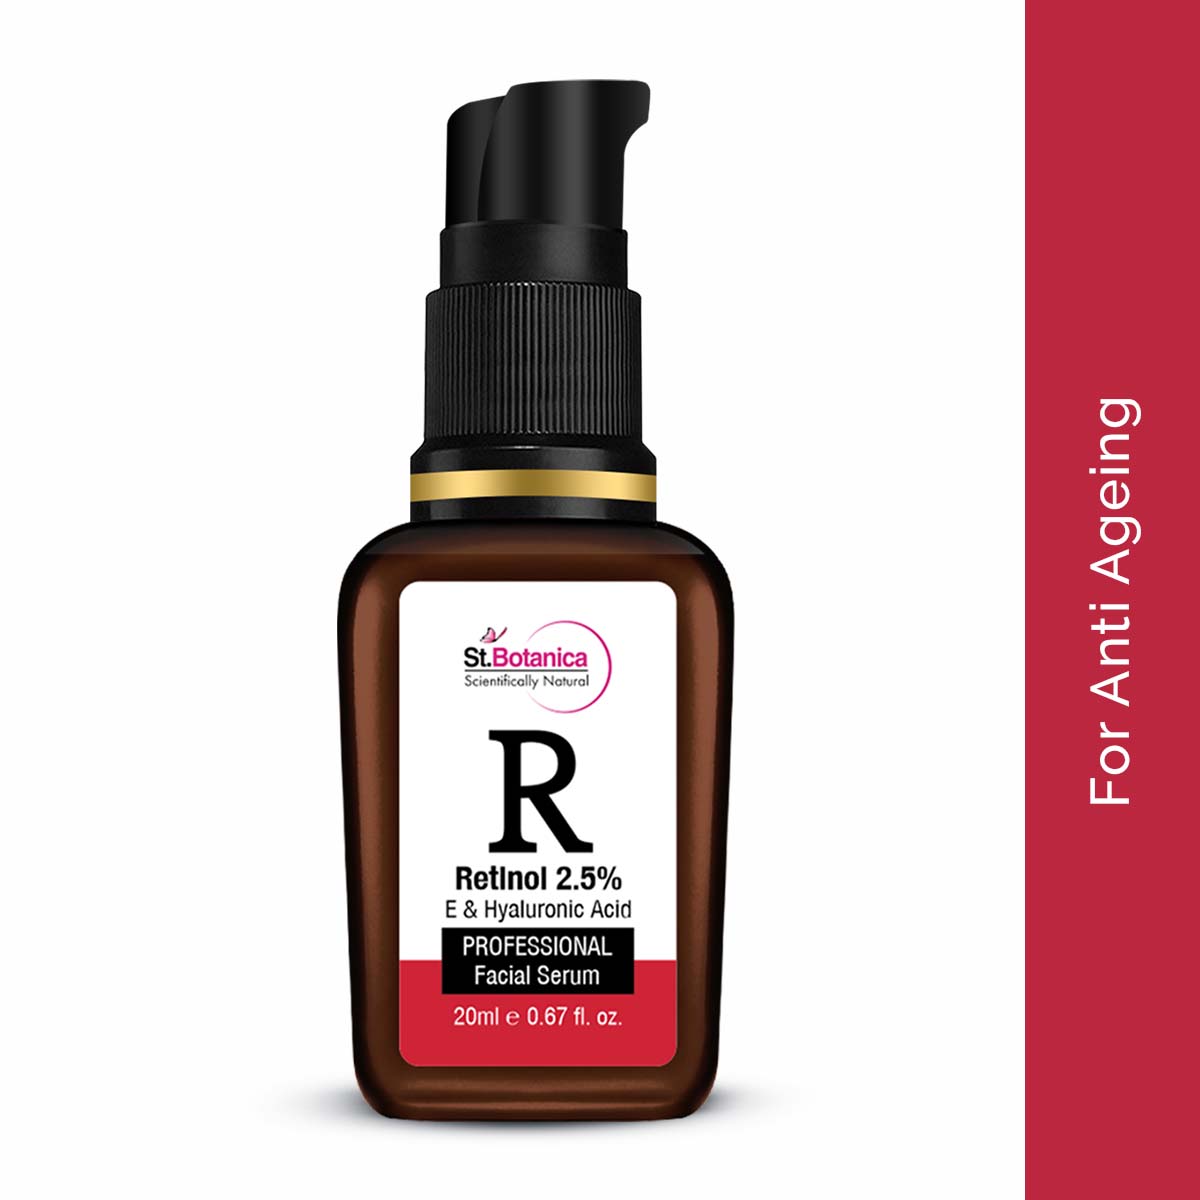 St.Botanica Retinol 2.5% + Hyaluronic Acid Face Serum - Anti Aging/Wrinkle Face Serum, 20 ml